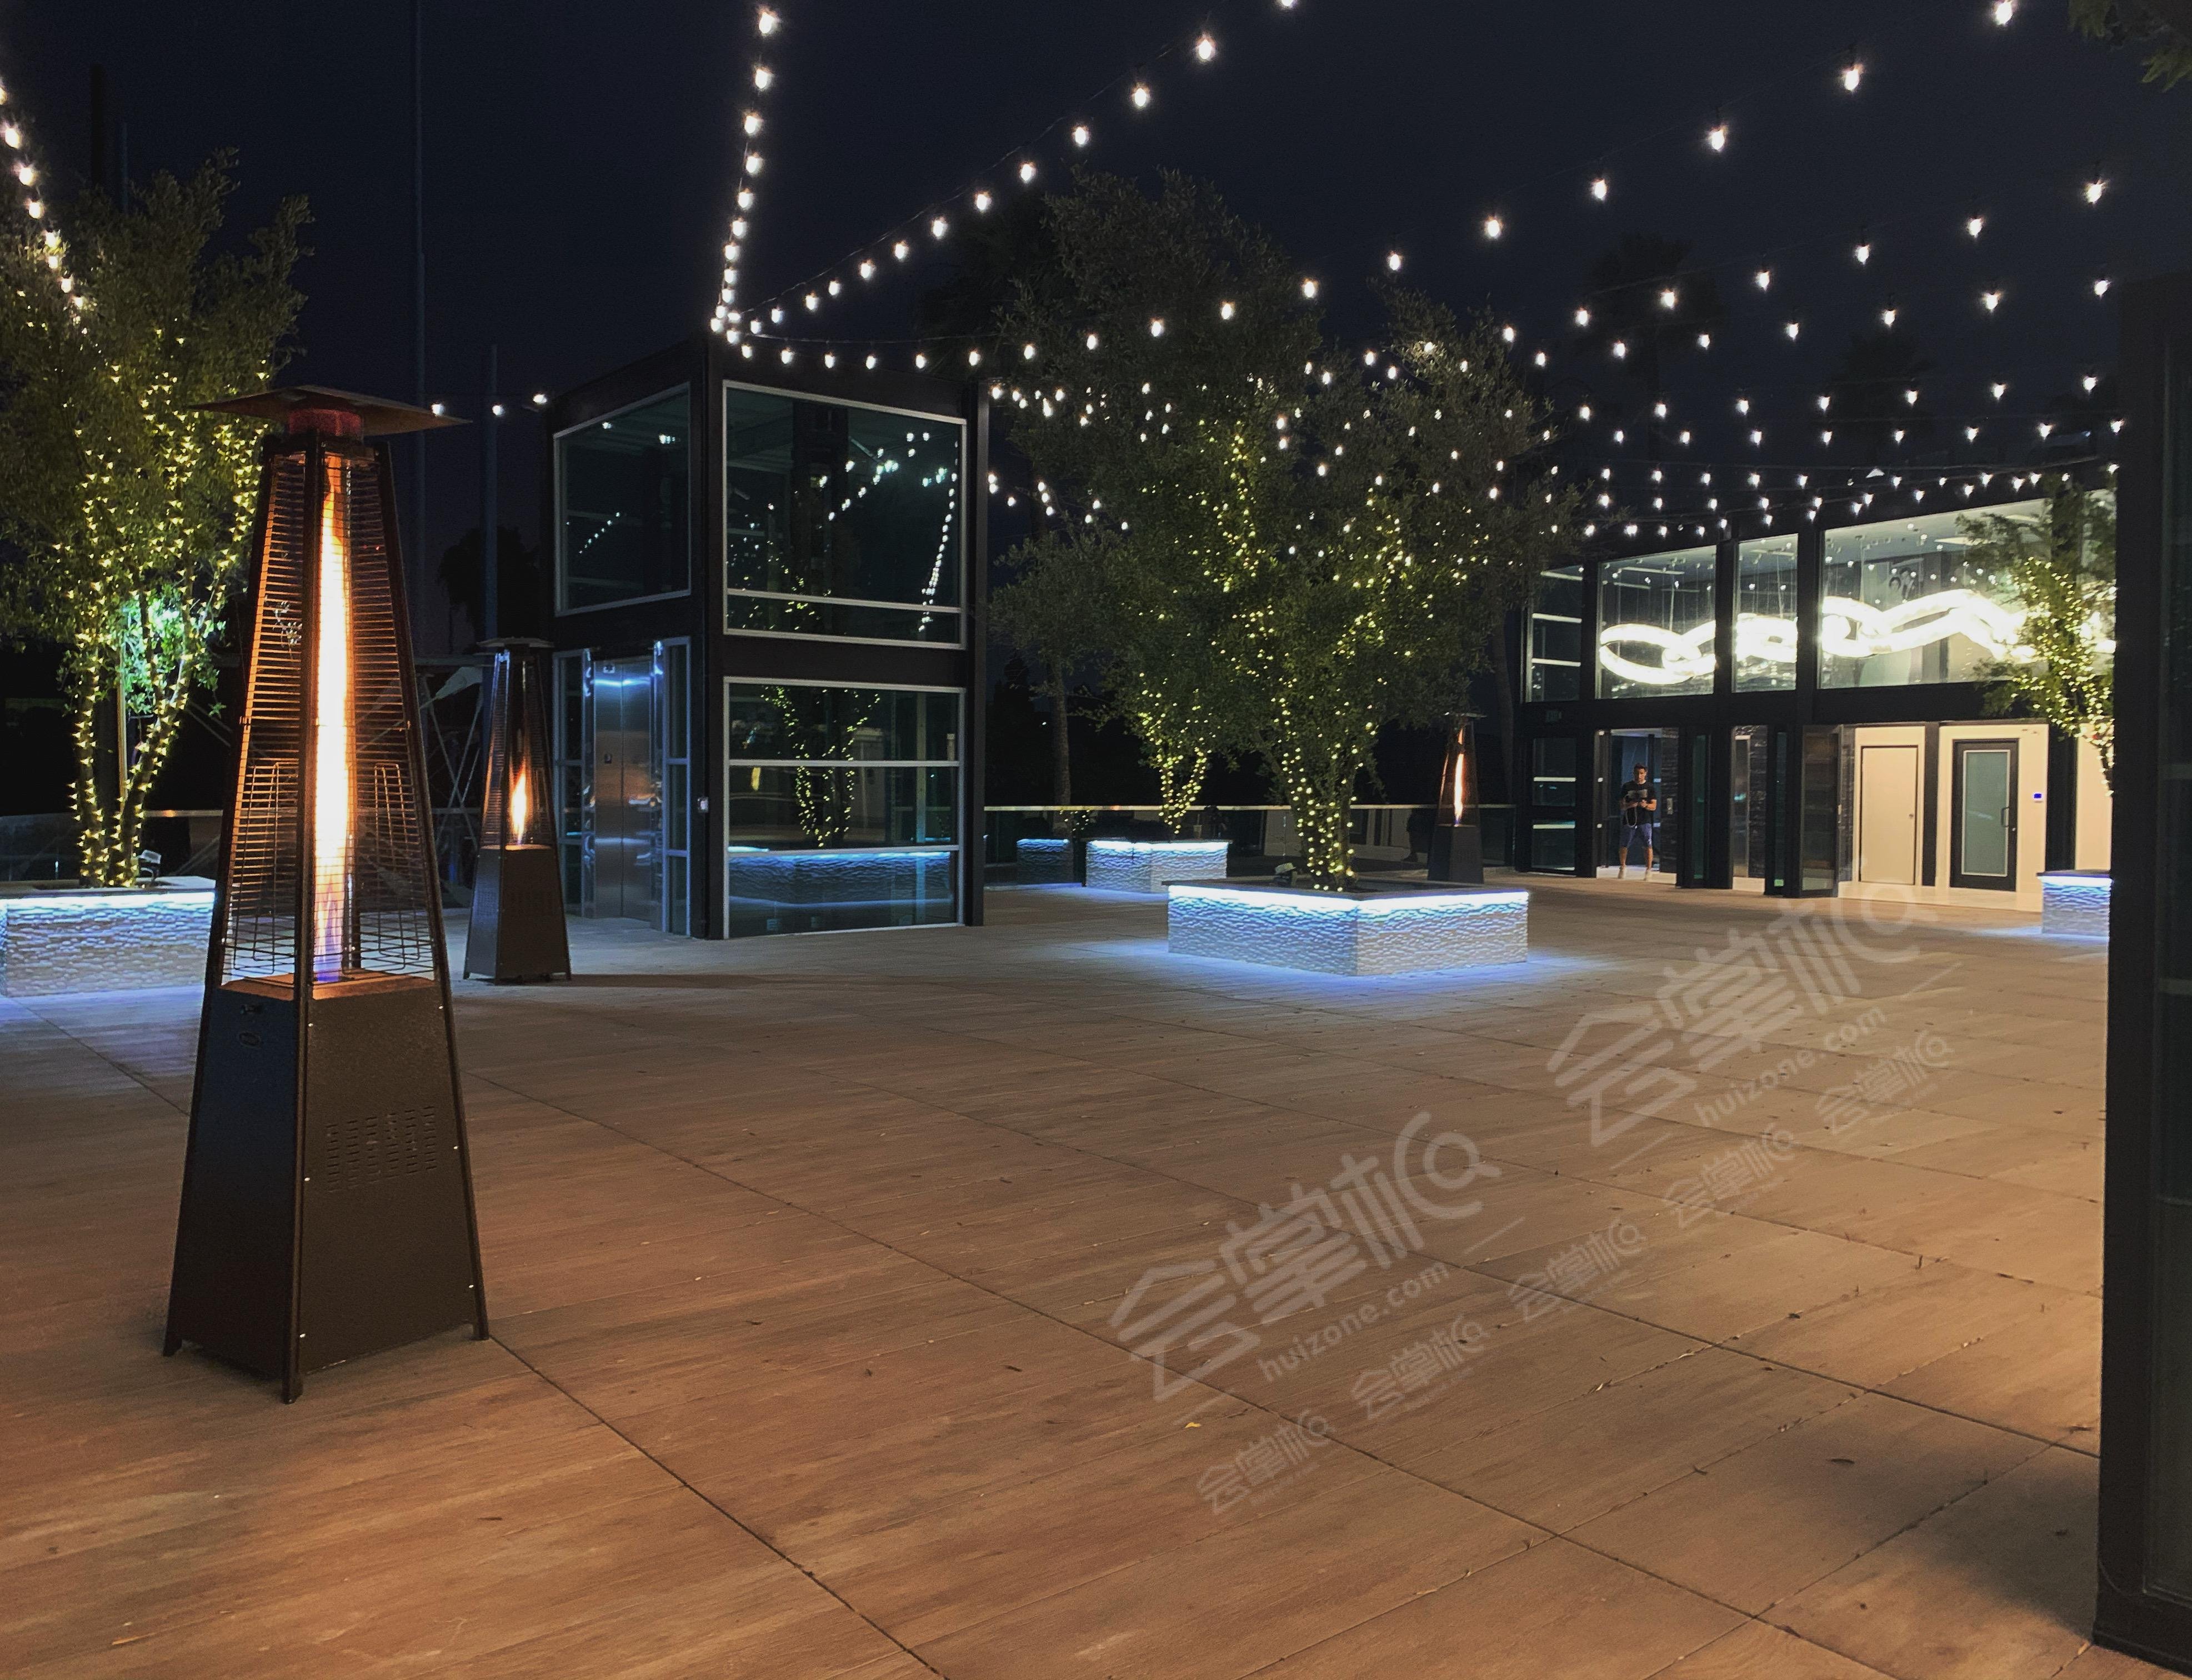 Culver City indoor/outdoor modern rooftop event & filming space